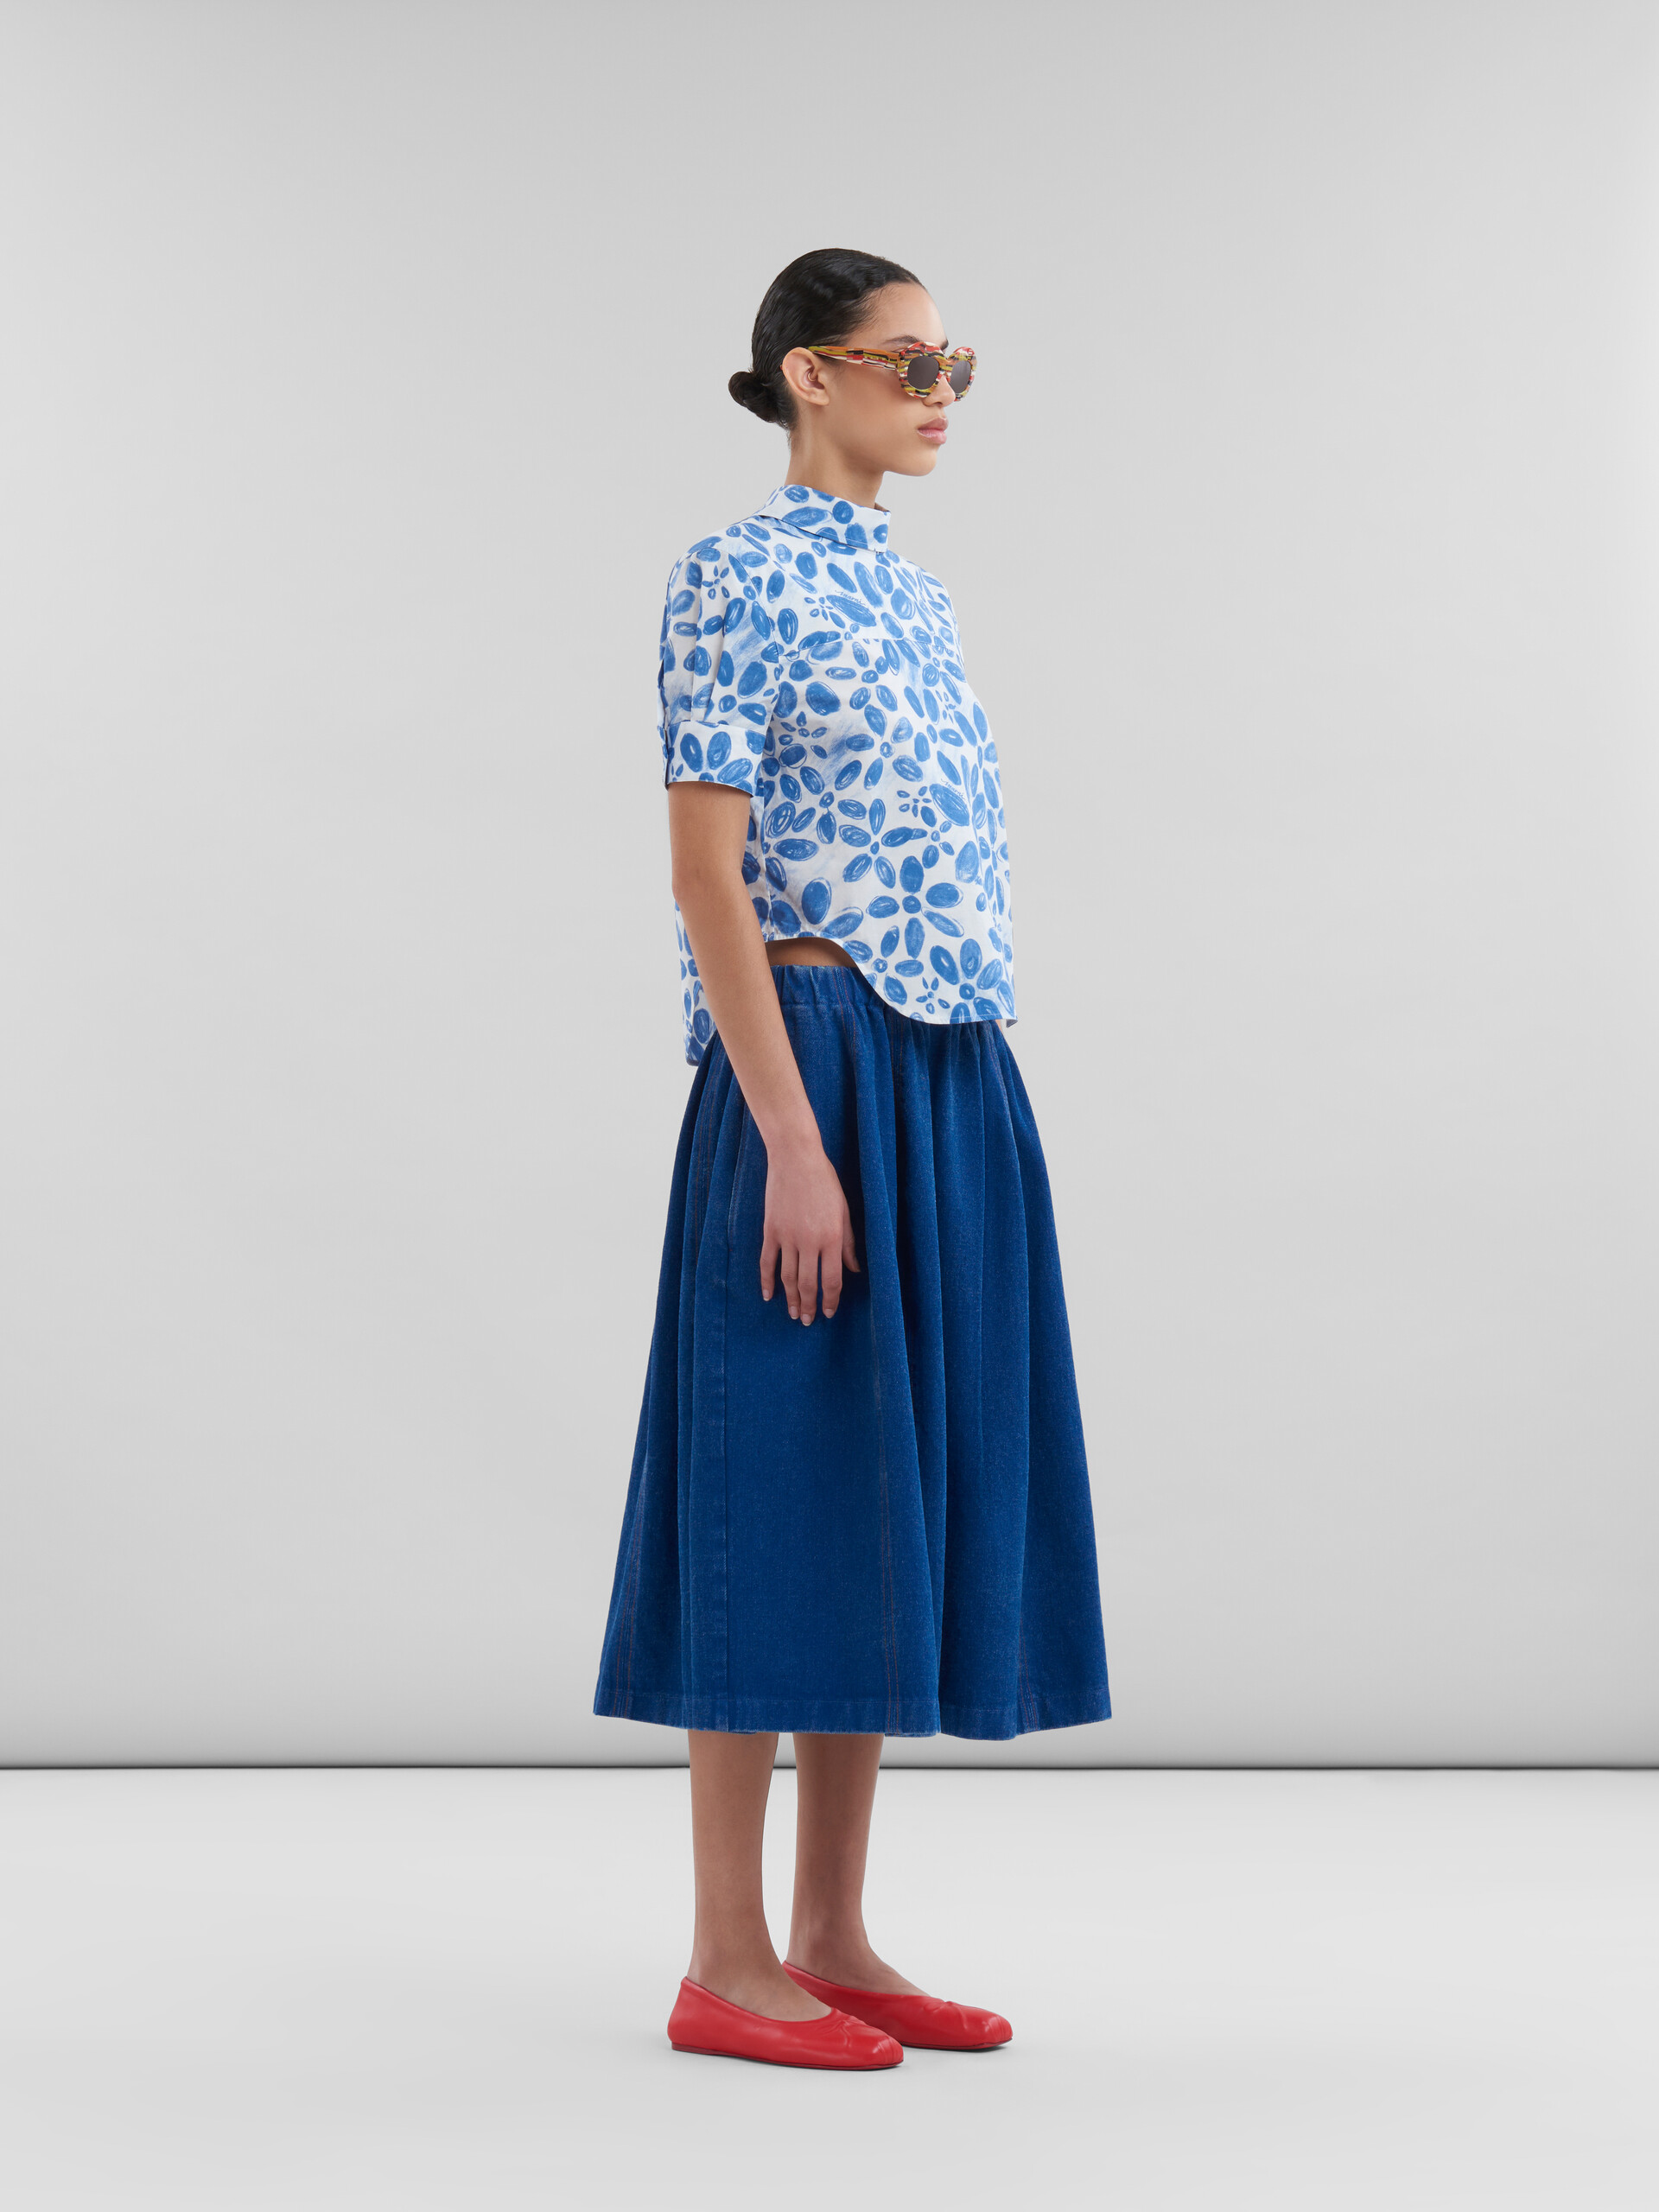 Falda midi elástica azul de denim orgánico - Faldas - Image 5